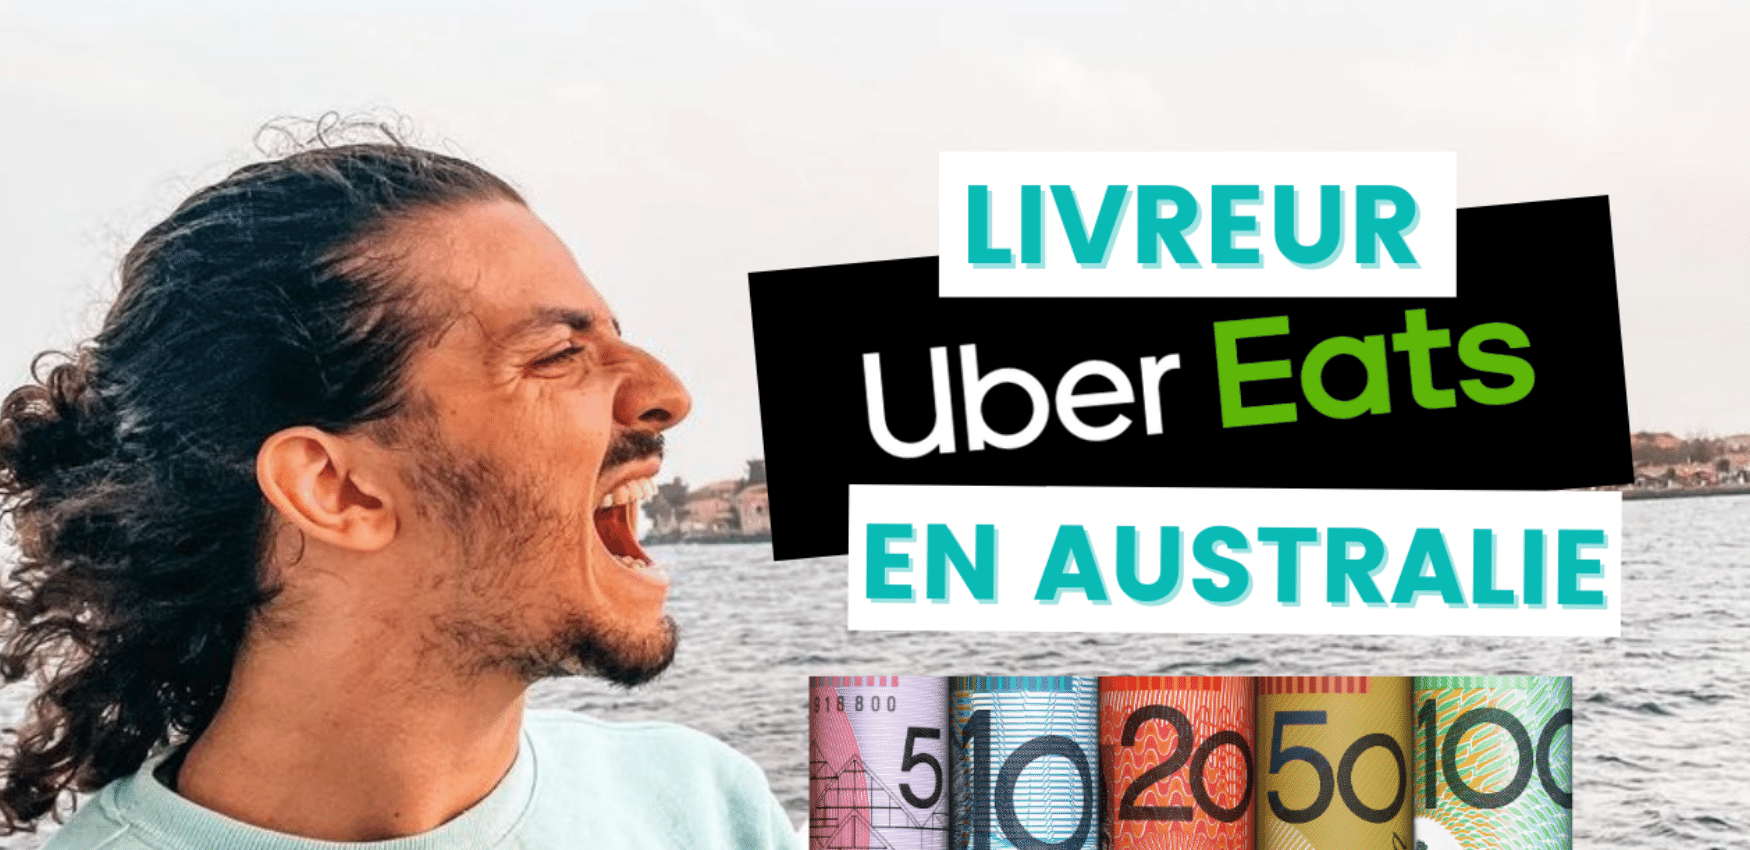 Livreur Uber Eat en Australie : le témoignage de Stefano